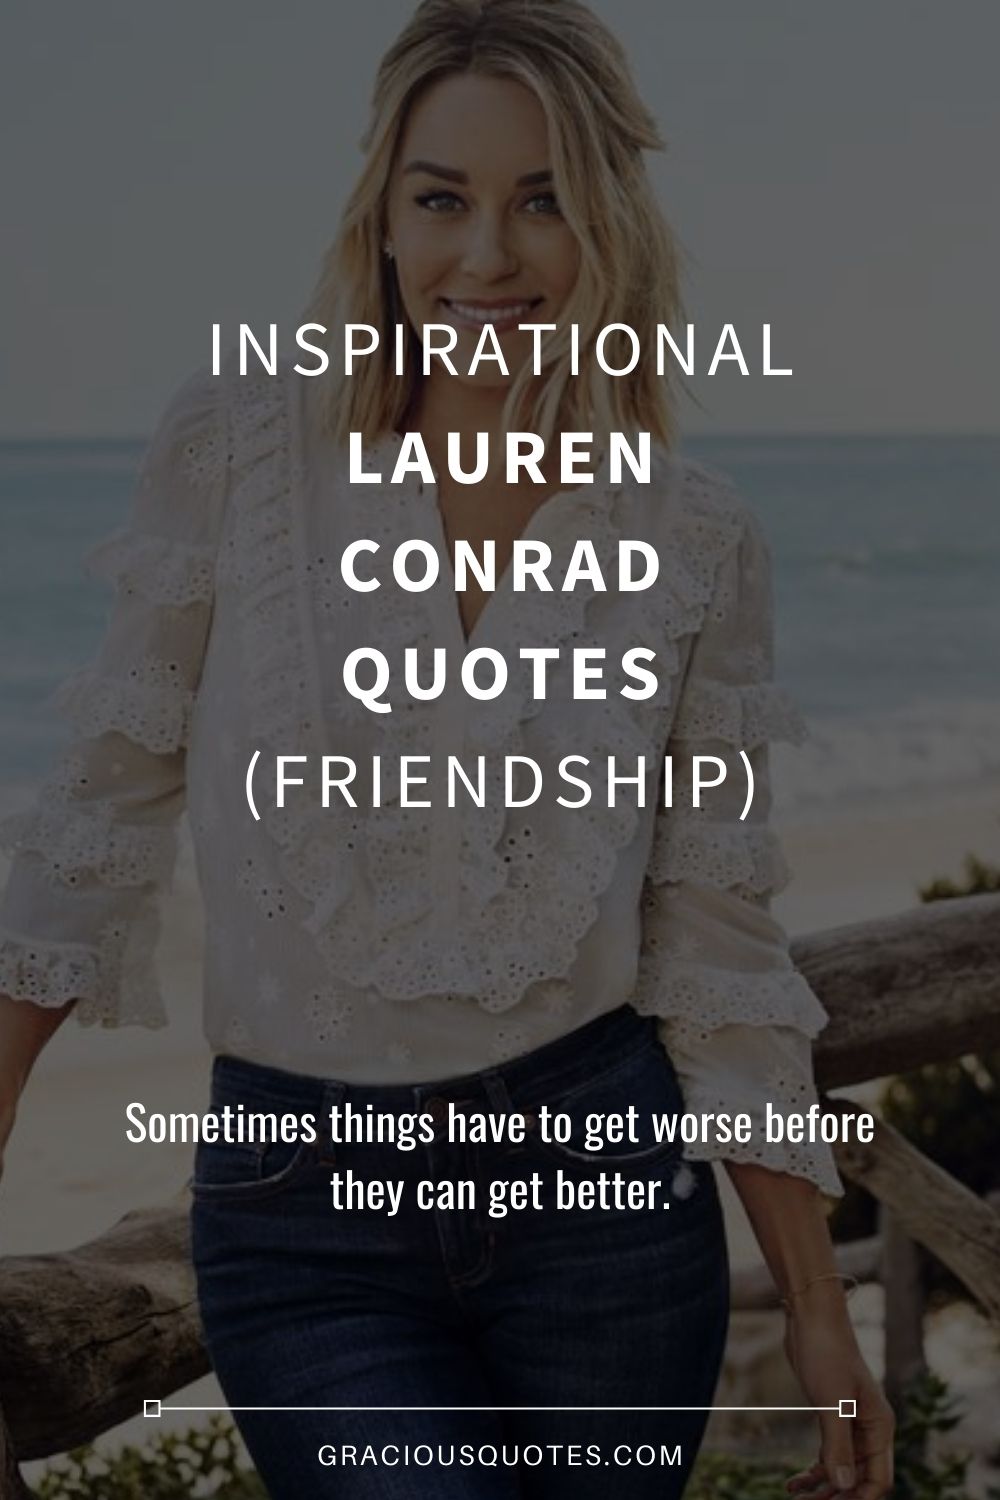 Inspirational Lauren Conrad Quotes (FRIENDSHIP) - Gracious Quotes